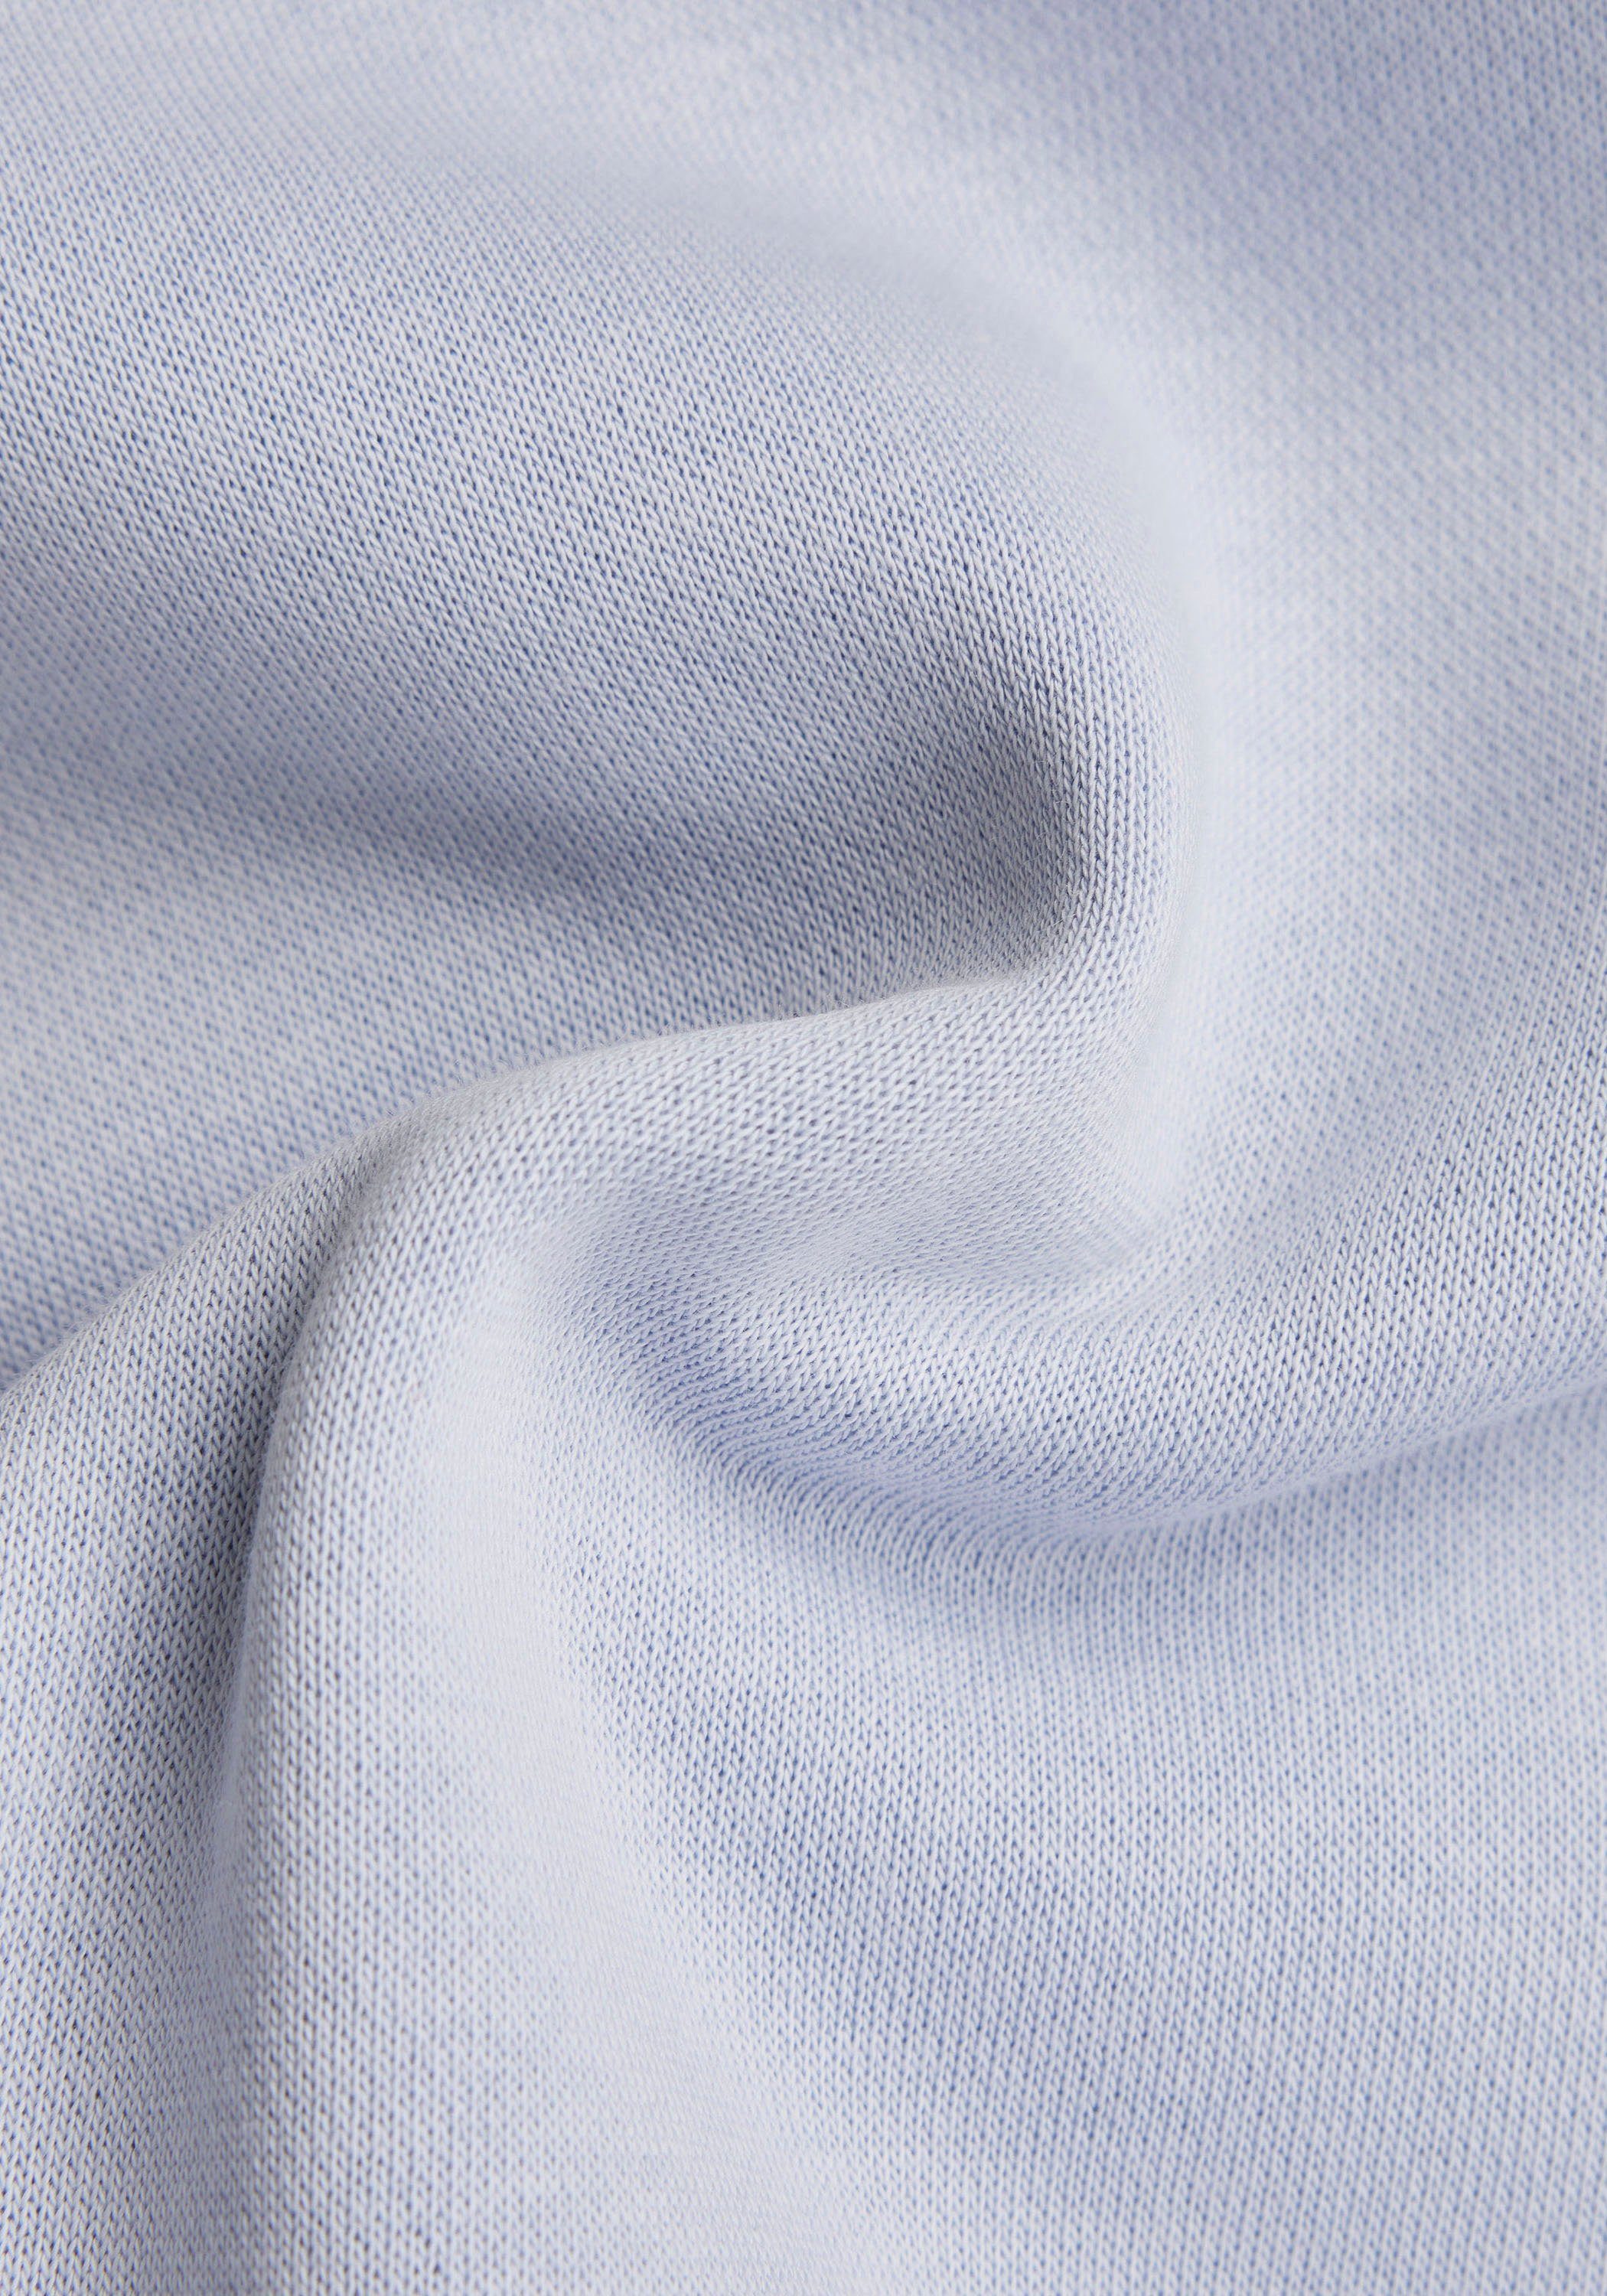 Sweatshirt Sweat RAW blue icelandic Premium Pacior Core G-Star